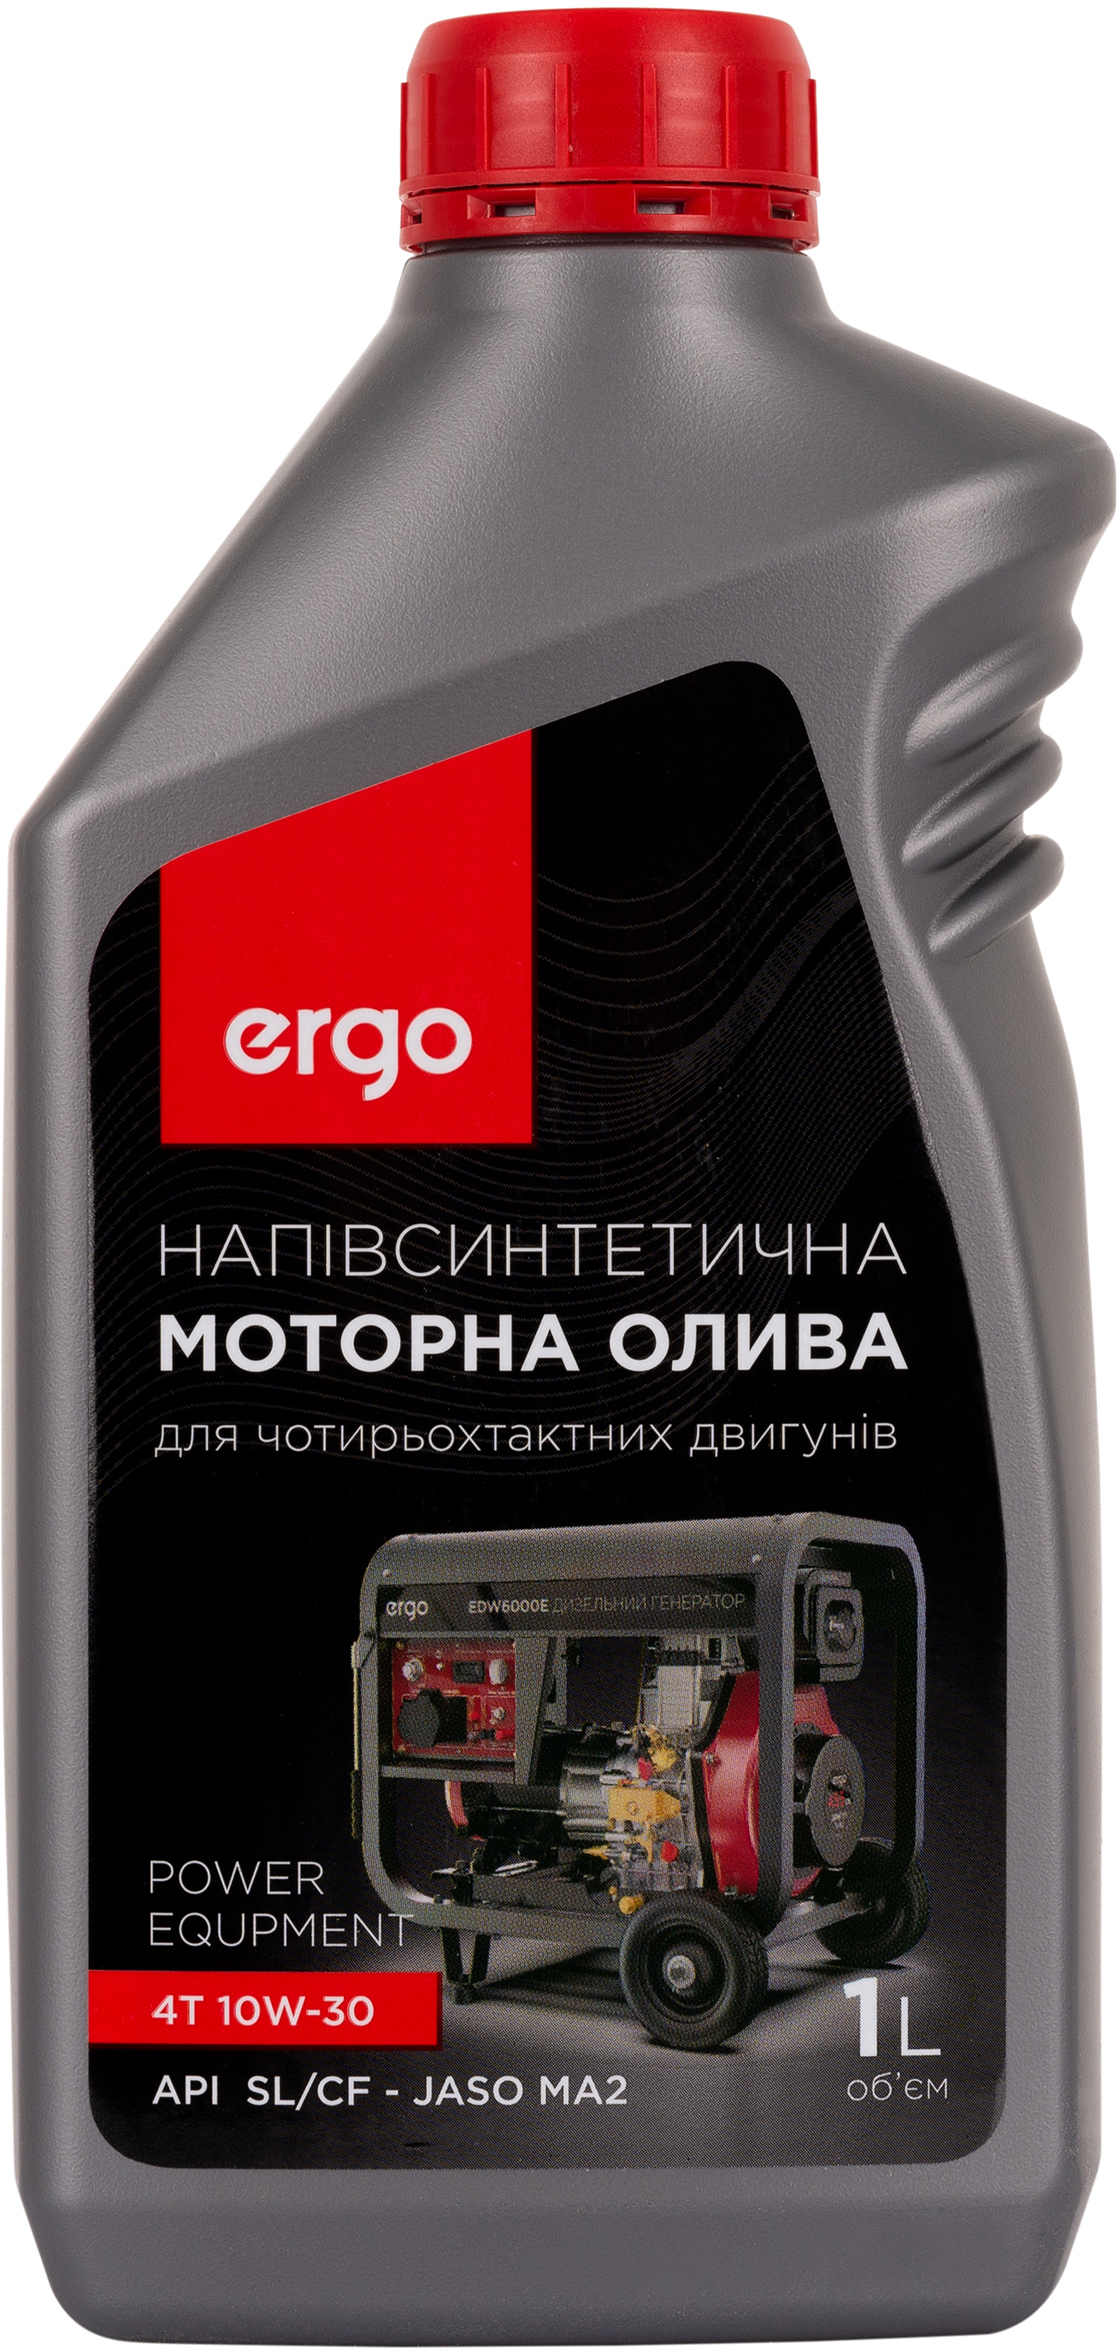 Цена моторное масло Ergo 10W-30, 1 л в Львове